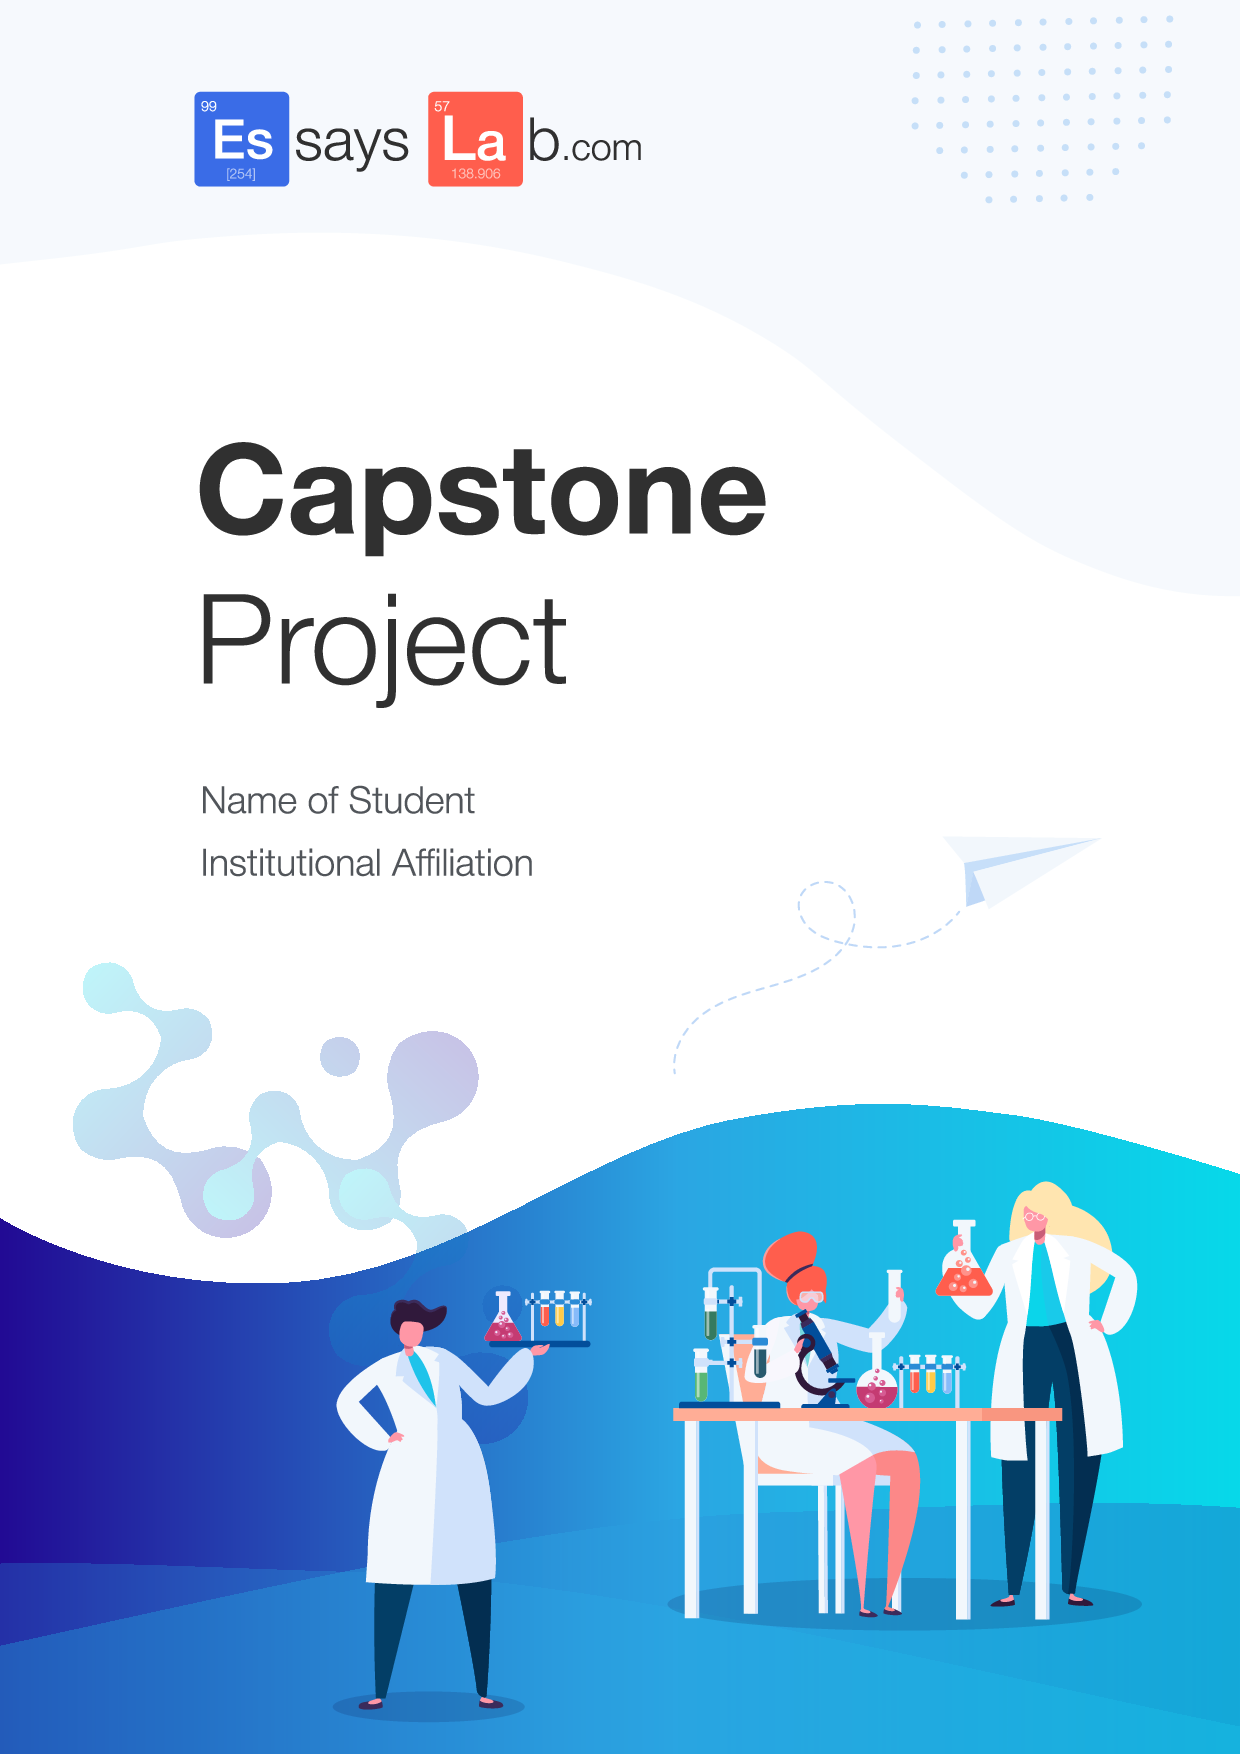 capstone research project purpose